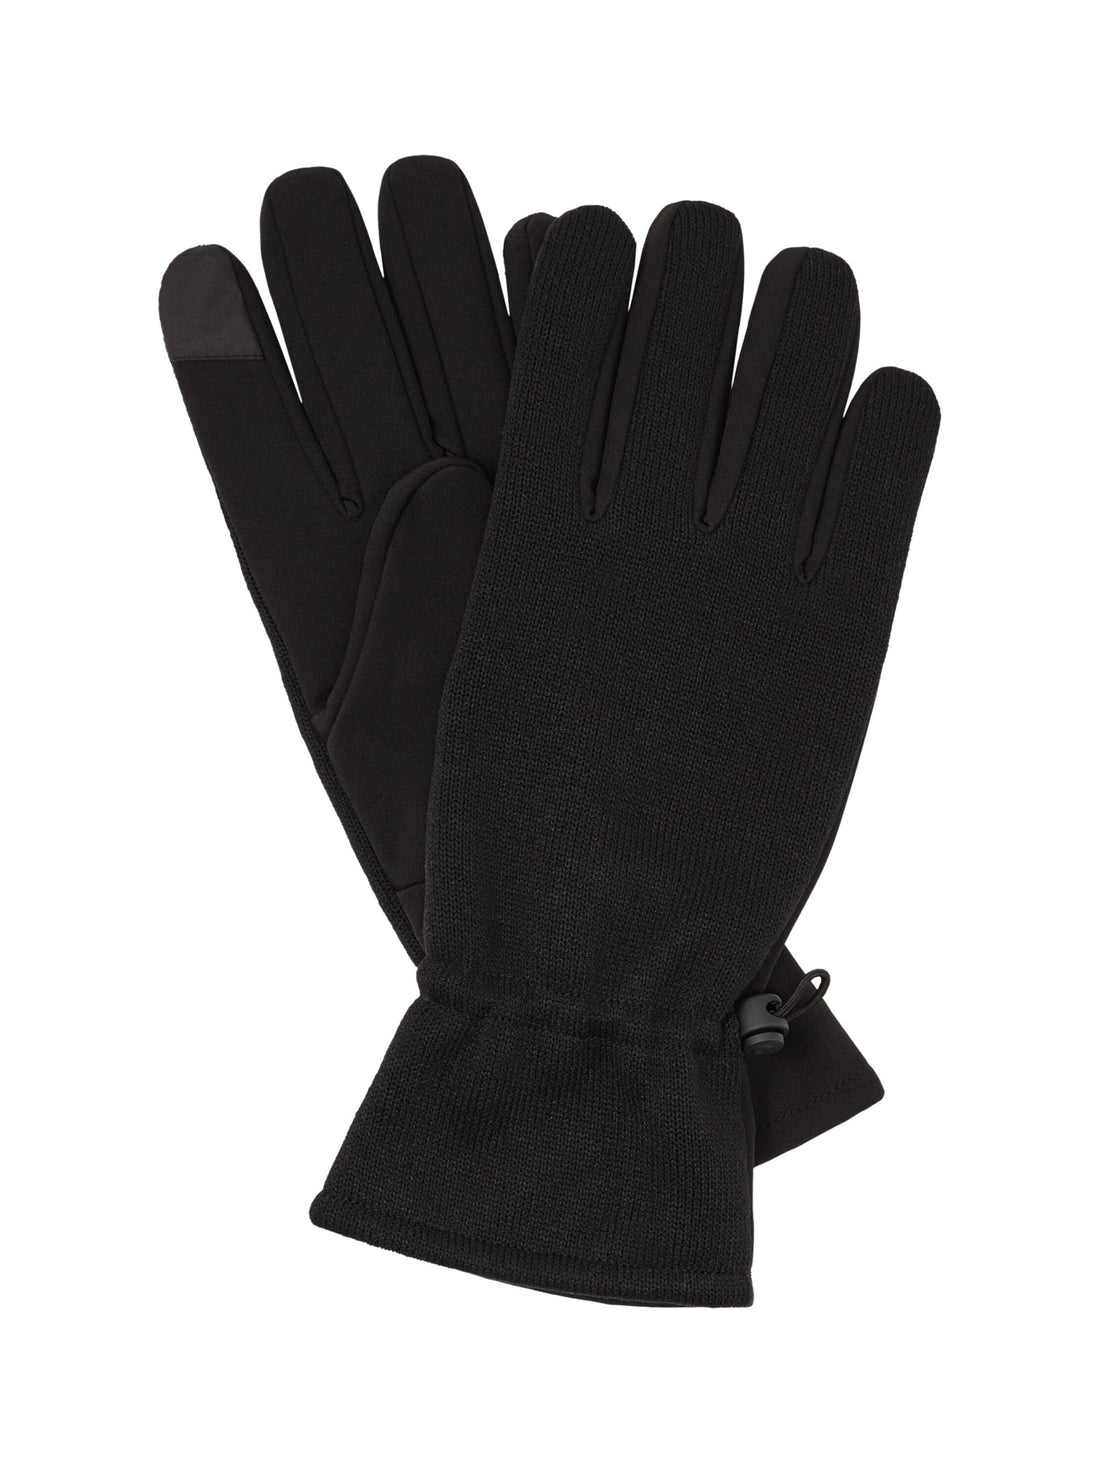 Adjustable Gloves_1038534_29999_01